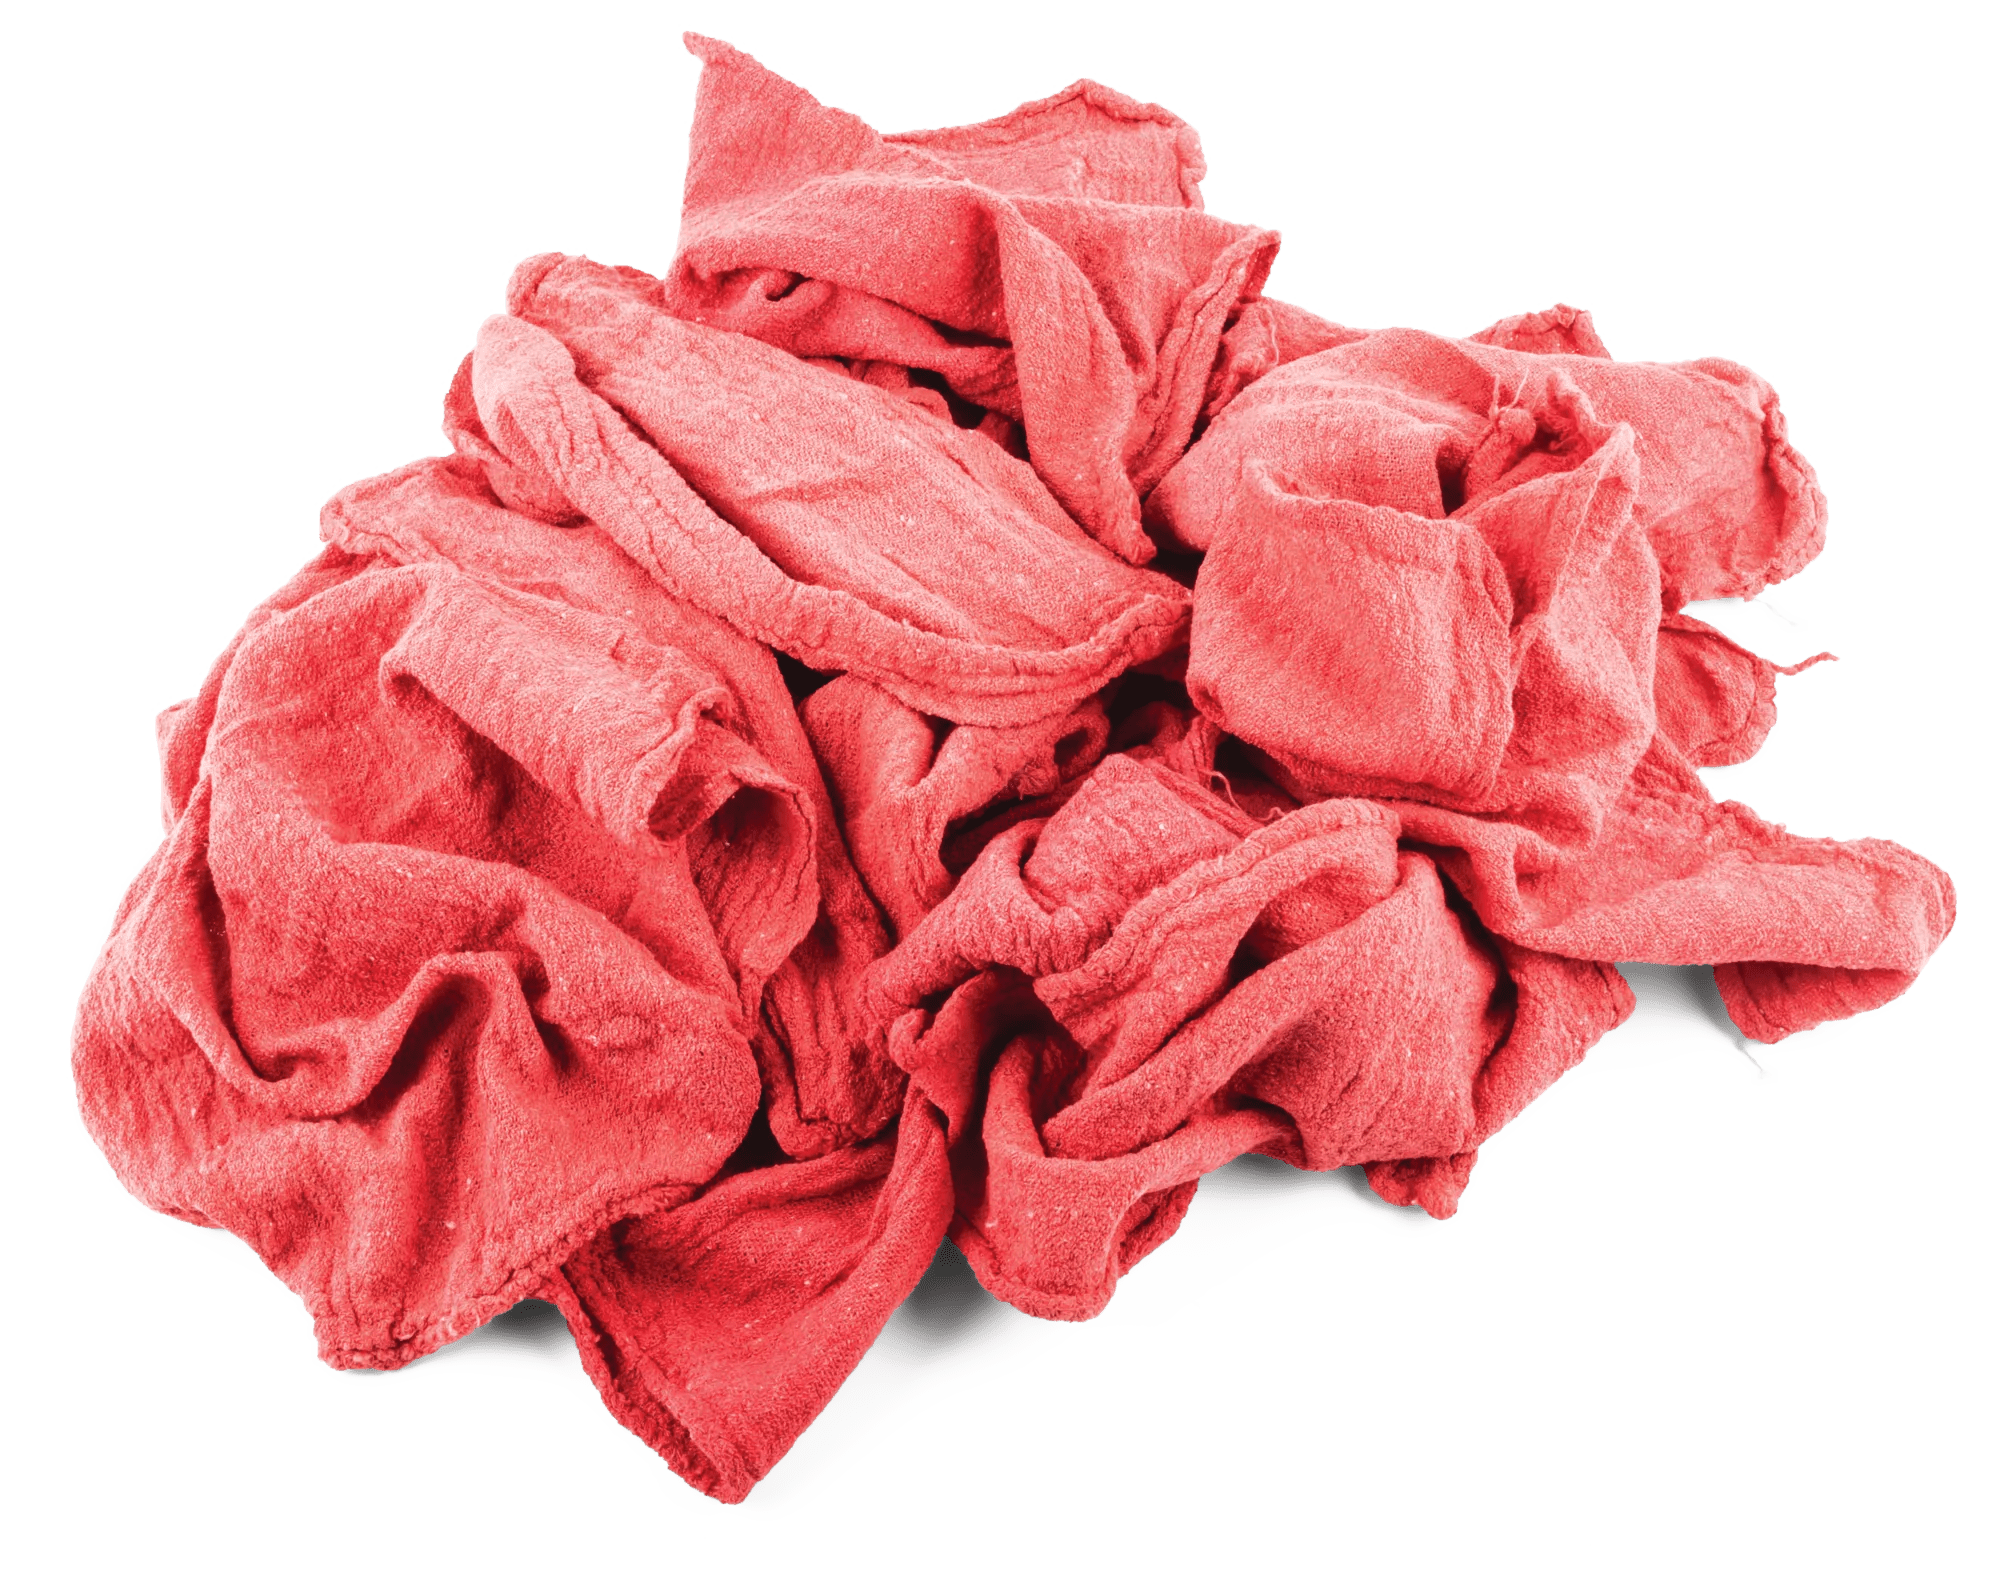 Red Cotton Shop Towels